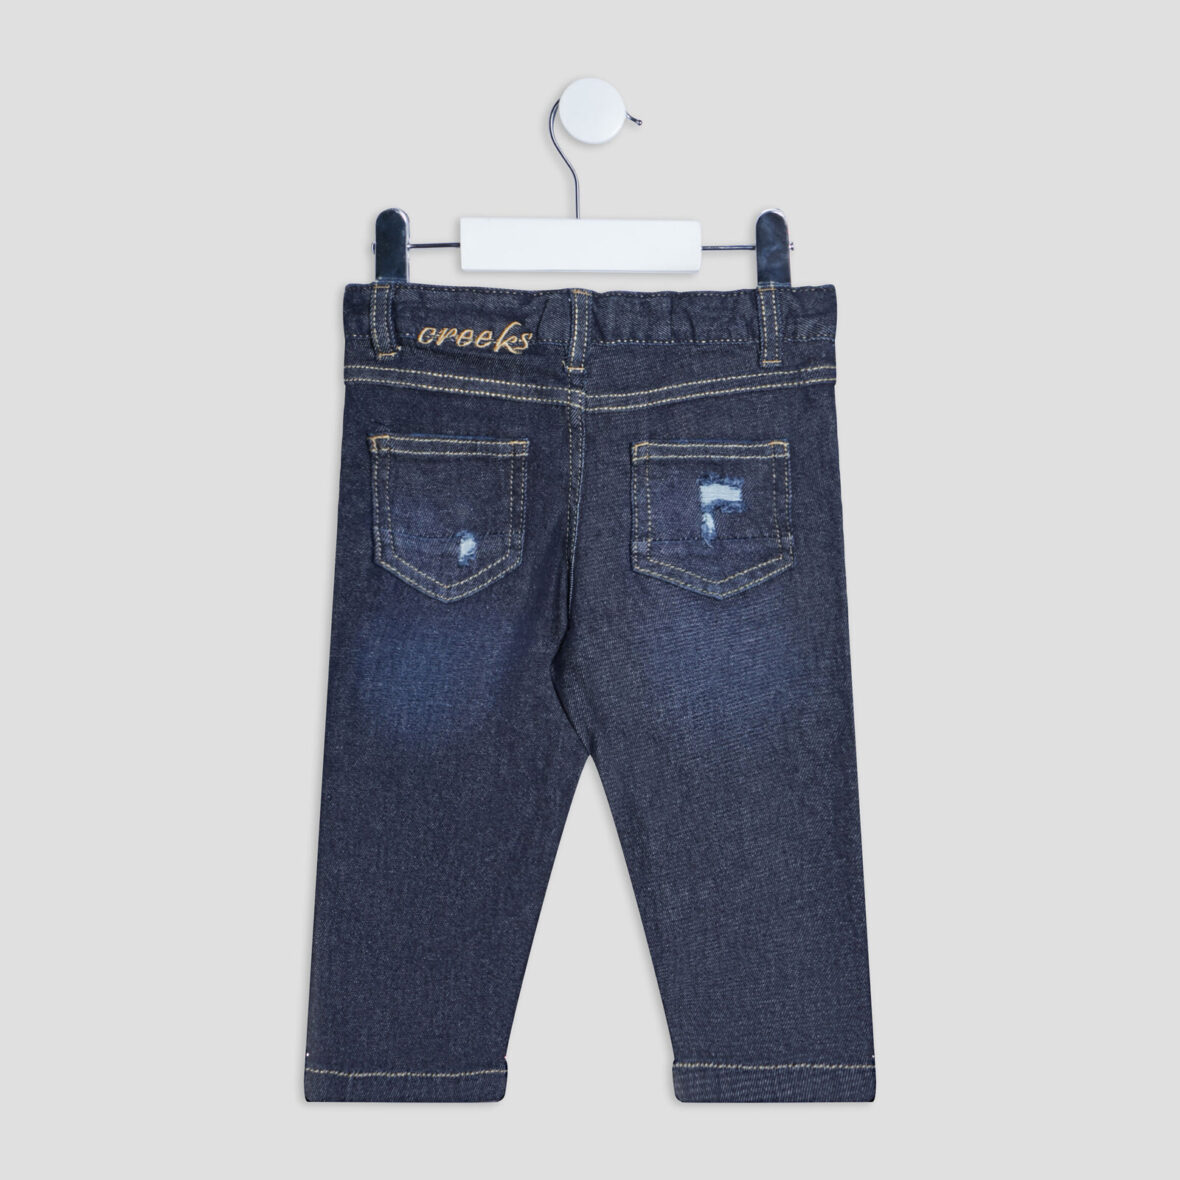 jeans-regular-taille-elastiquee-creeks-denim-brut-bebeg-vue2-36165600620141028